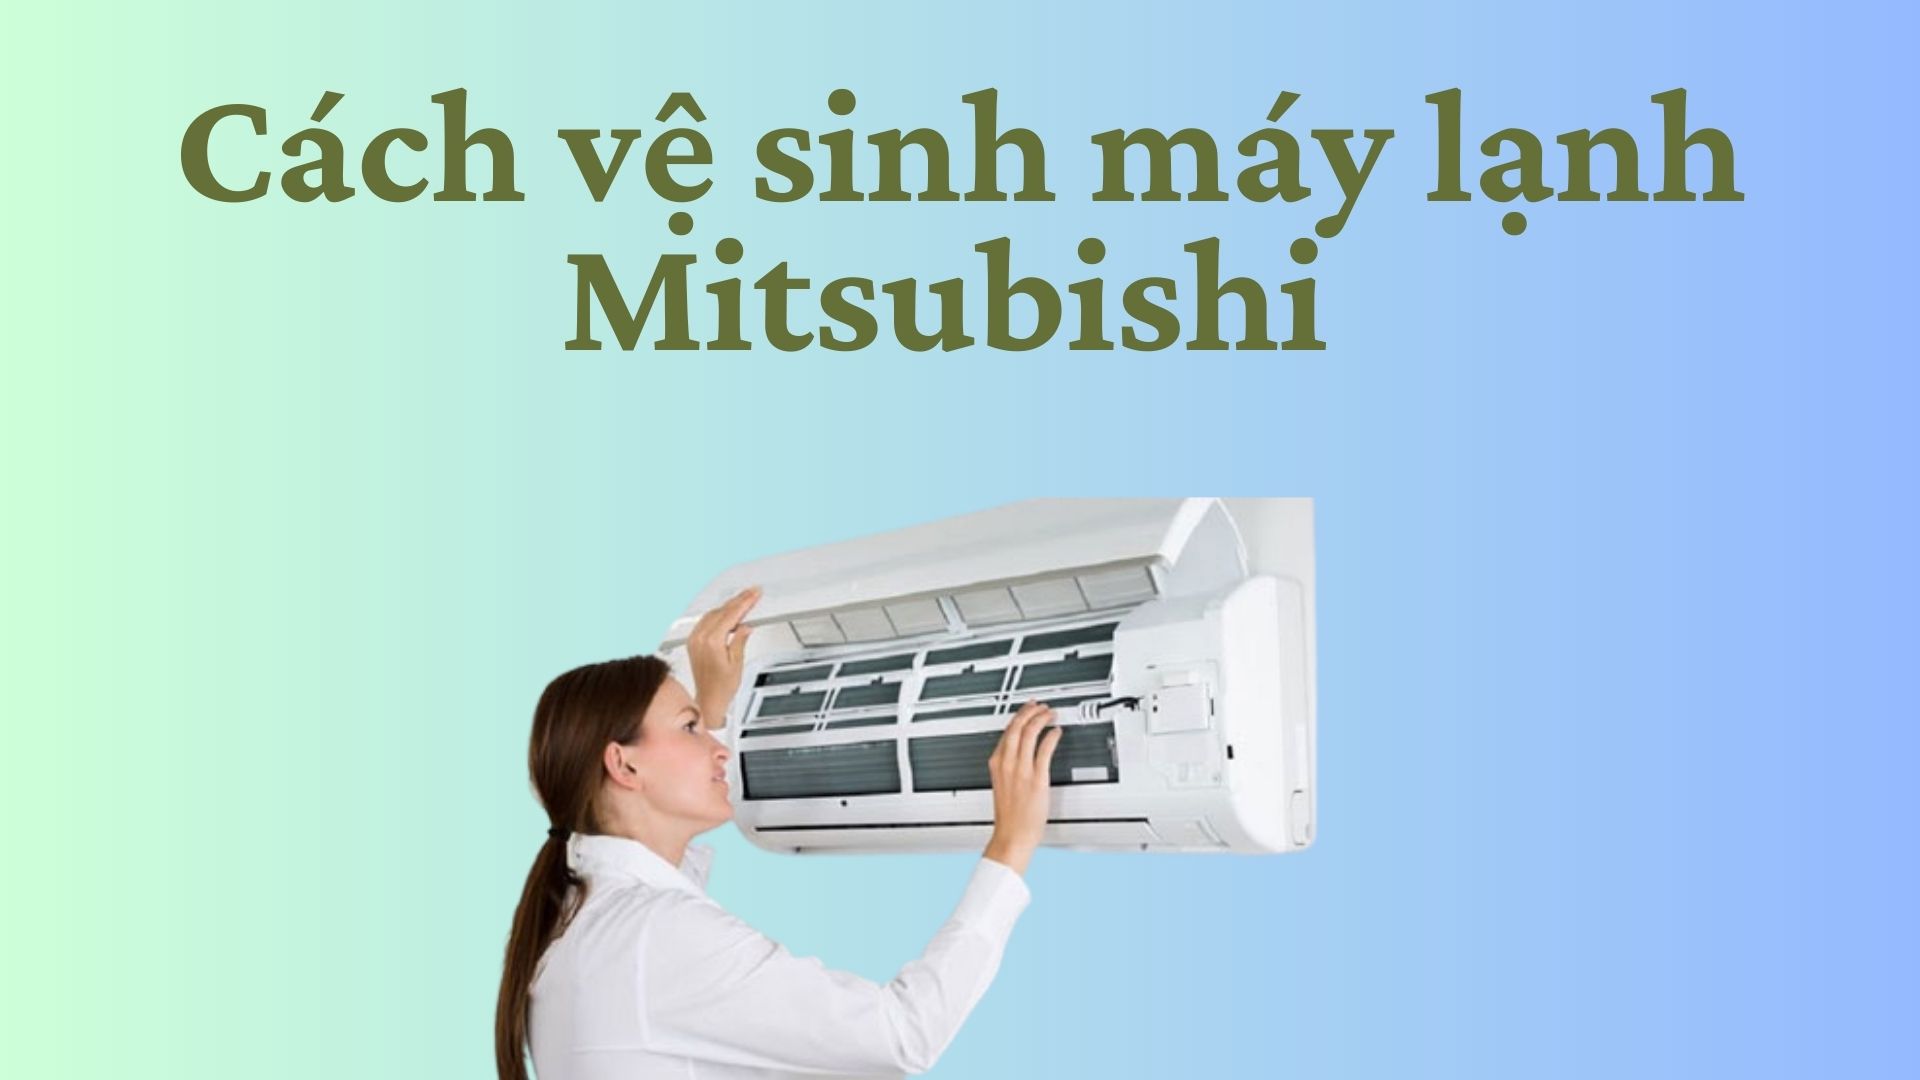 Làm thế nào để lau chùi sạch sẽ lớp vỏ ngoài của máy lạnh Mitsubishi Heavy Industries?
